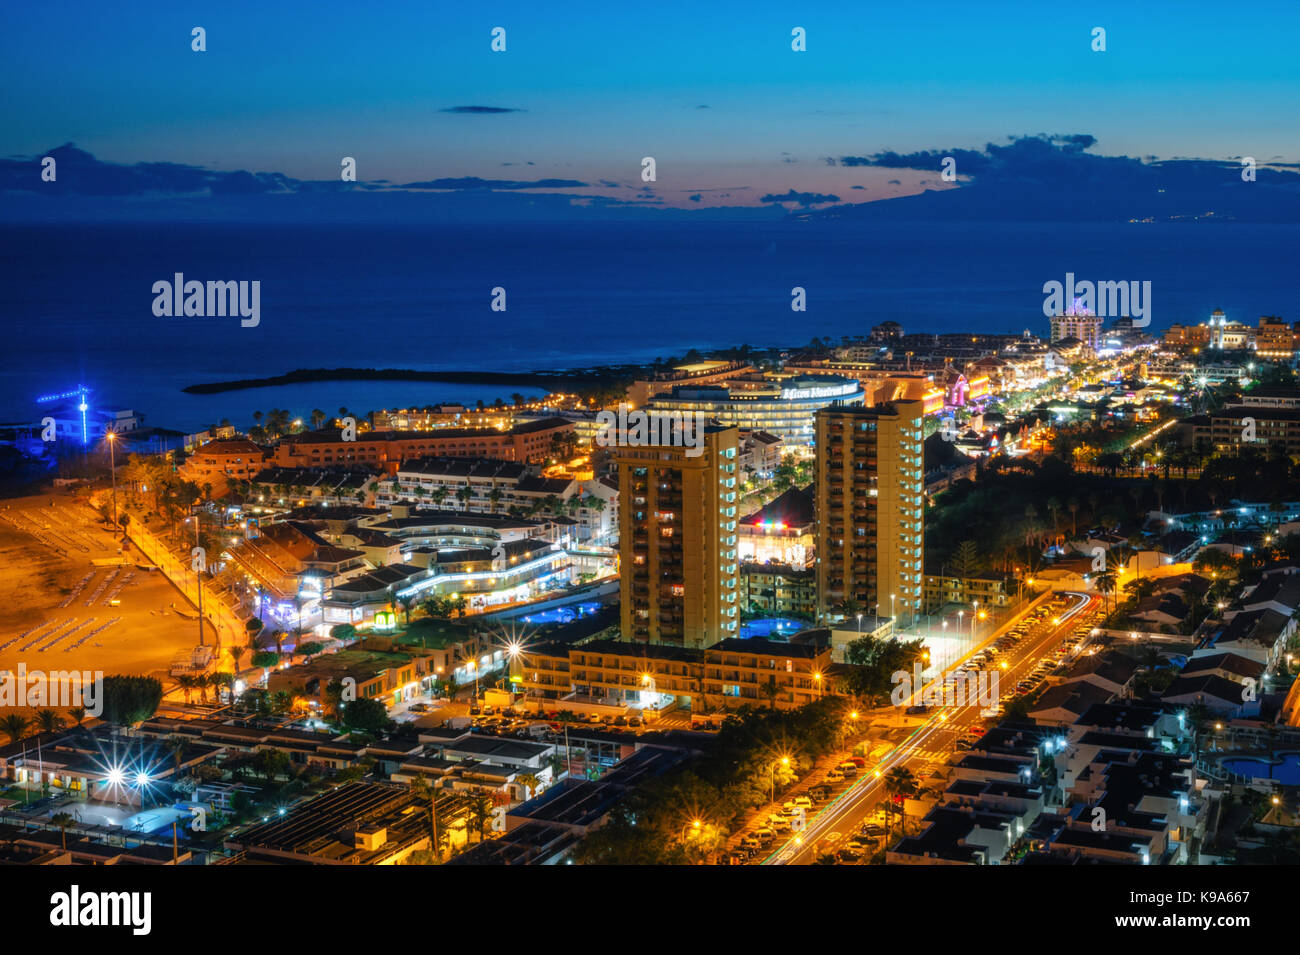 Vue panoramique de l'allumé en las americas de nuit avec des clubs, hôtels et bars dans l'île de Ténérife, Espagne Banque D'Images